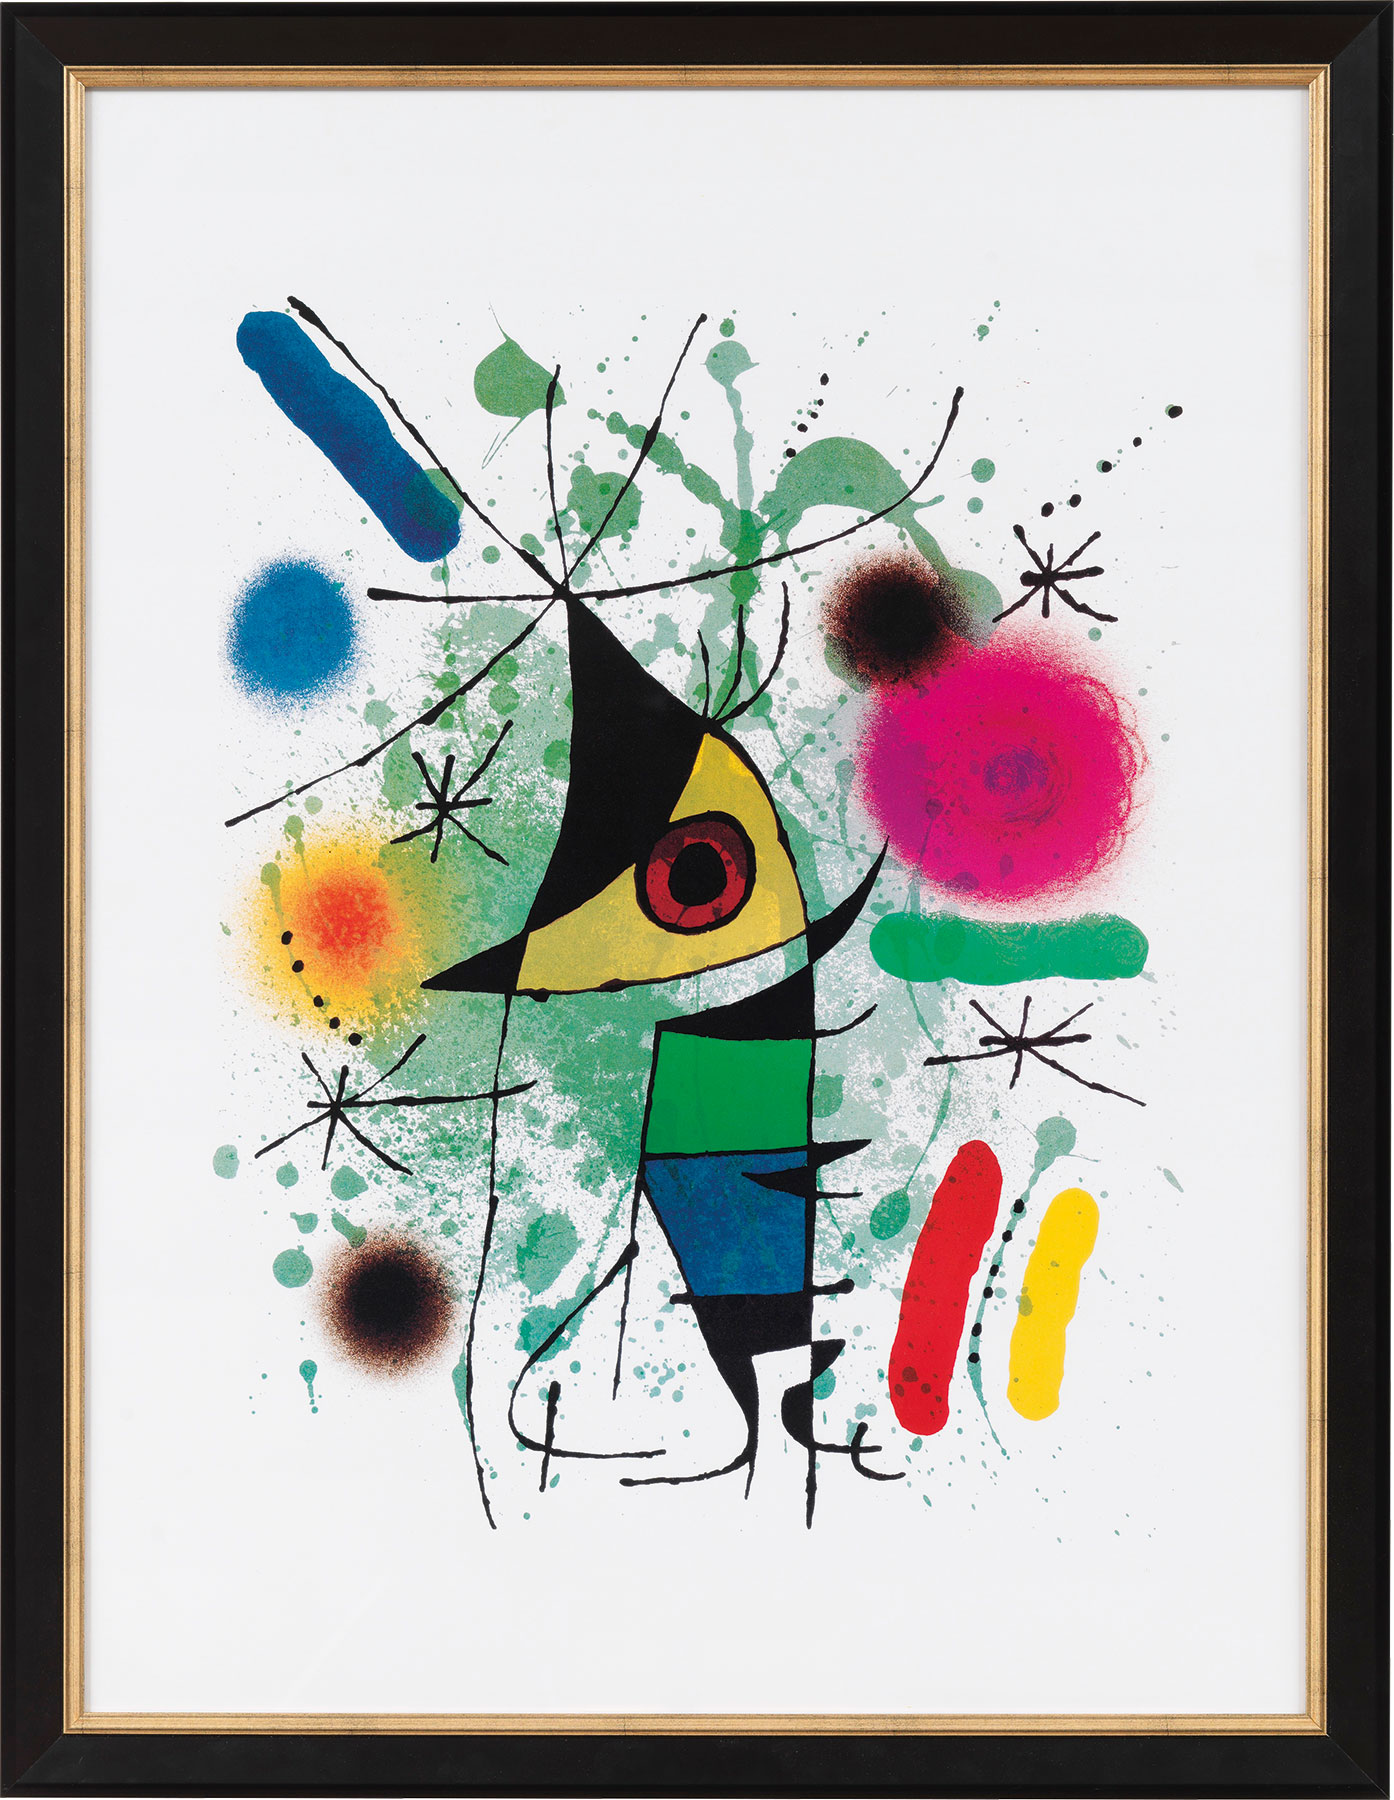 Gemälde Der singende Fisch (1972) - Miró